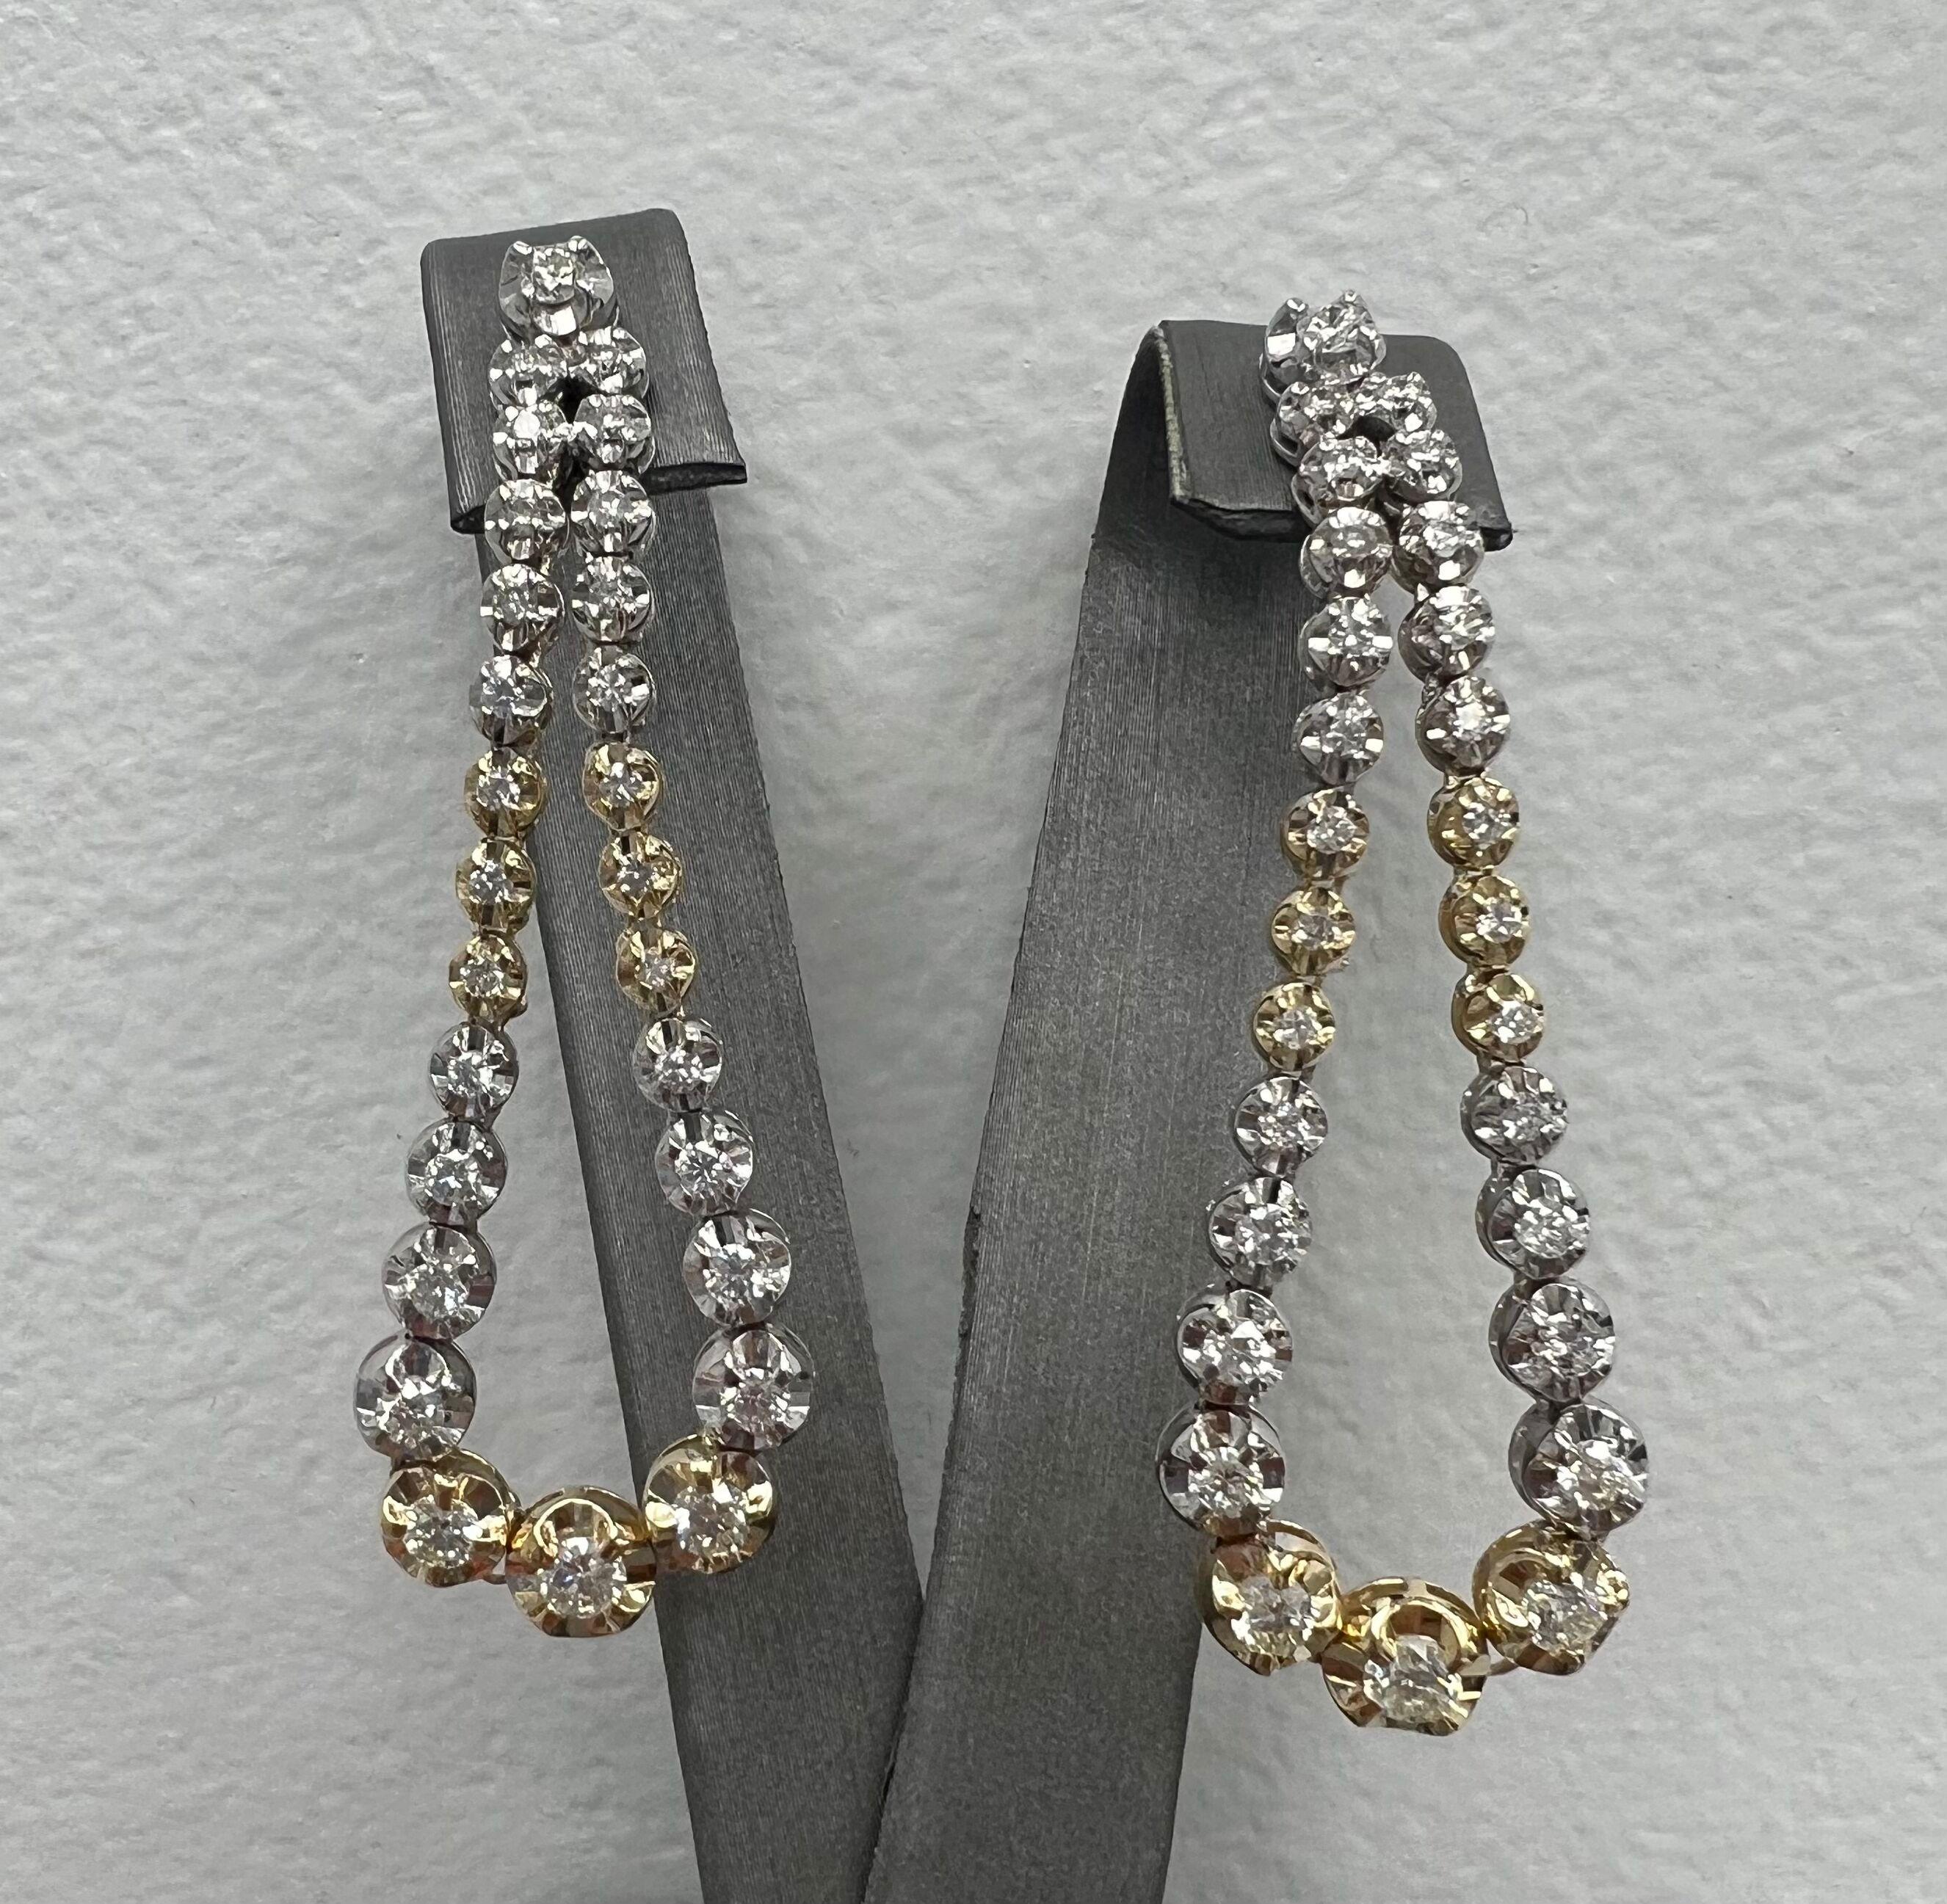 Einzigartige zweifarbige 18k Tropfenohrringe mit natürlichen Diamanten im Vollschliff.
Erstaunliche neue Stil Diamant-Ohrringe perfekt für jeden wichtigen Anlass.
Die Illusionsfassung lässt die Diamanten 10x größer erscheinen.
18k Weiß- und